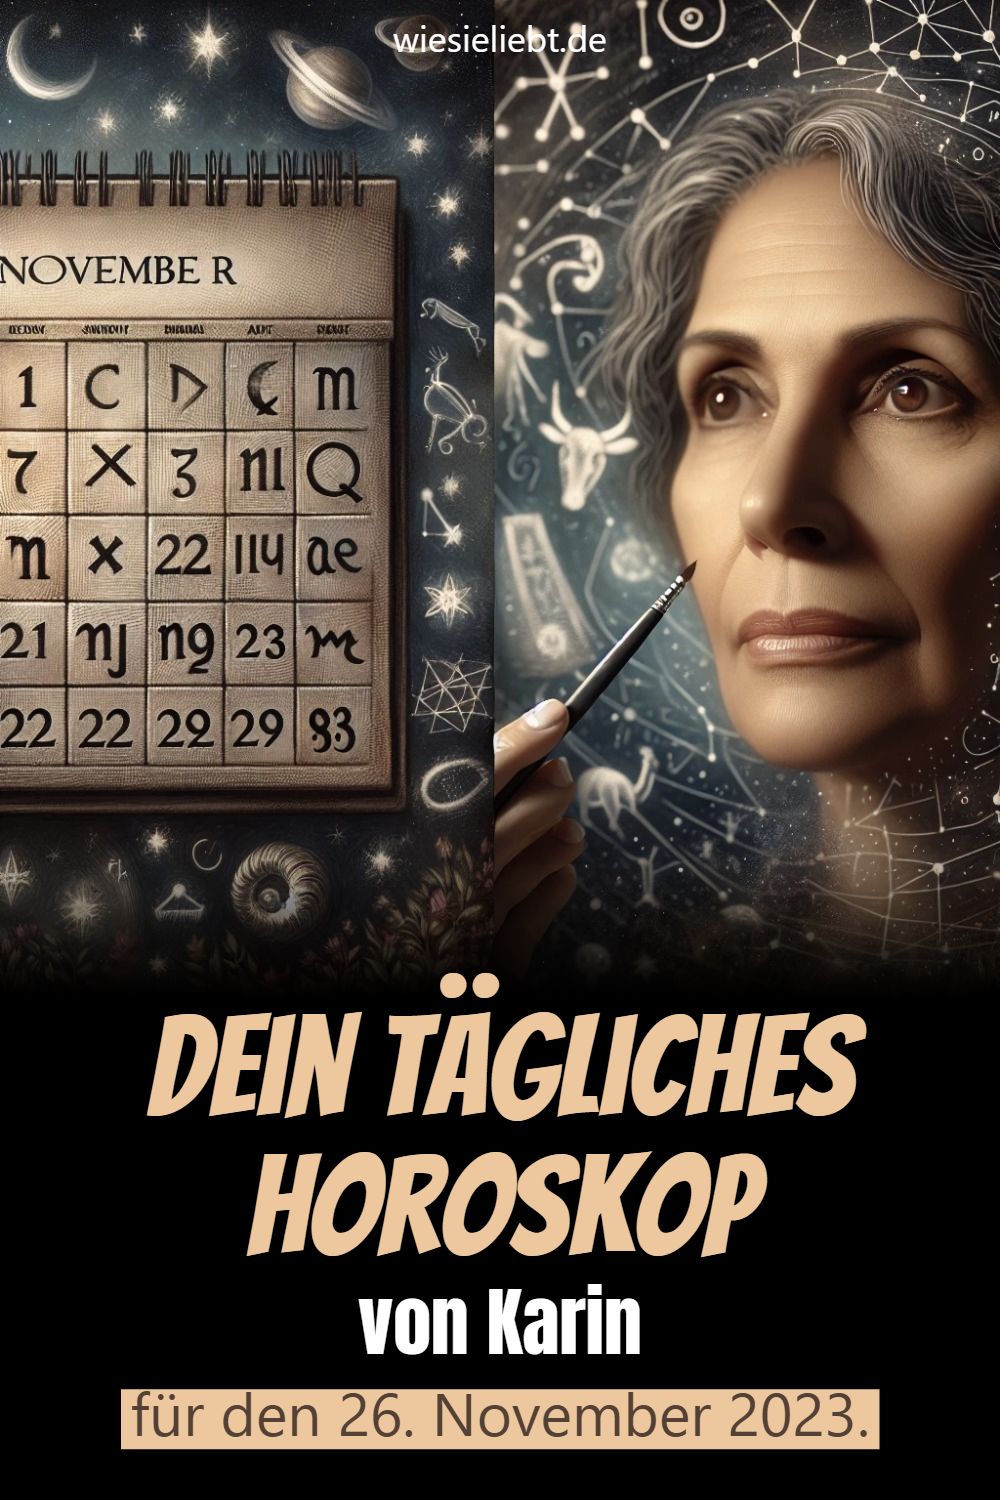 Dein tägliches Horoskop von Karin für den 26. November 2023.